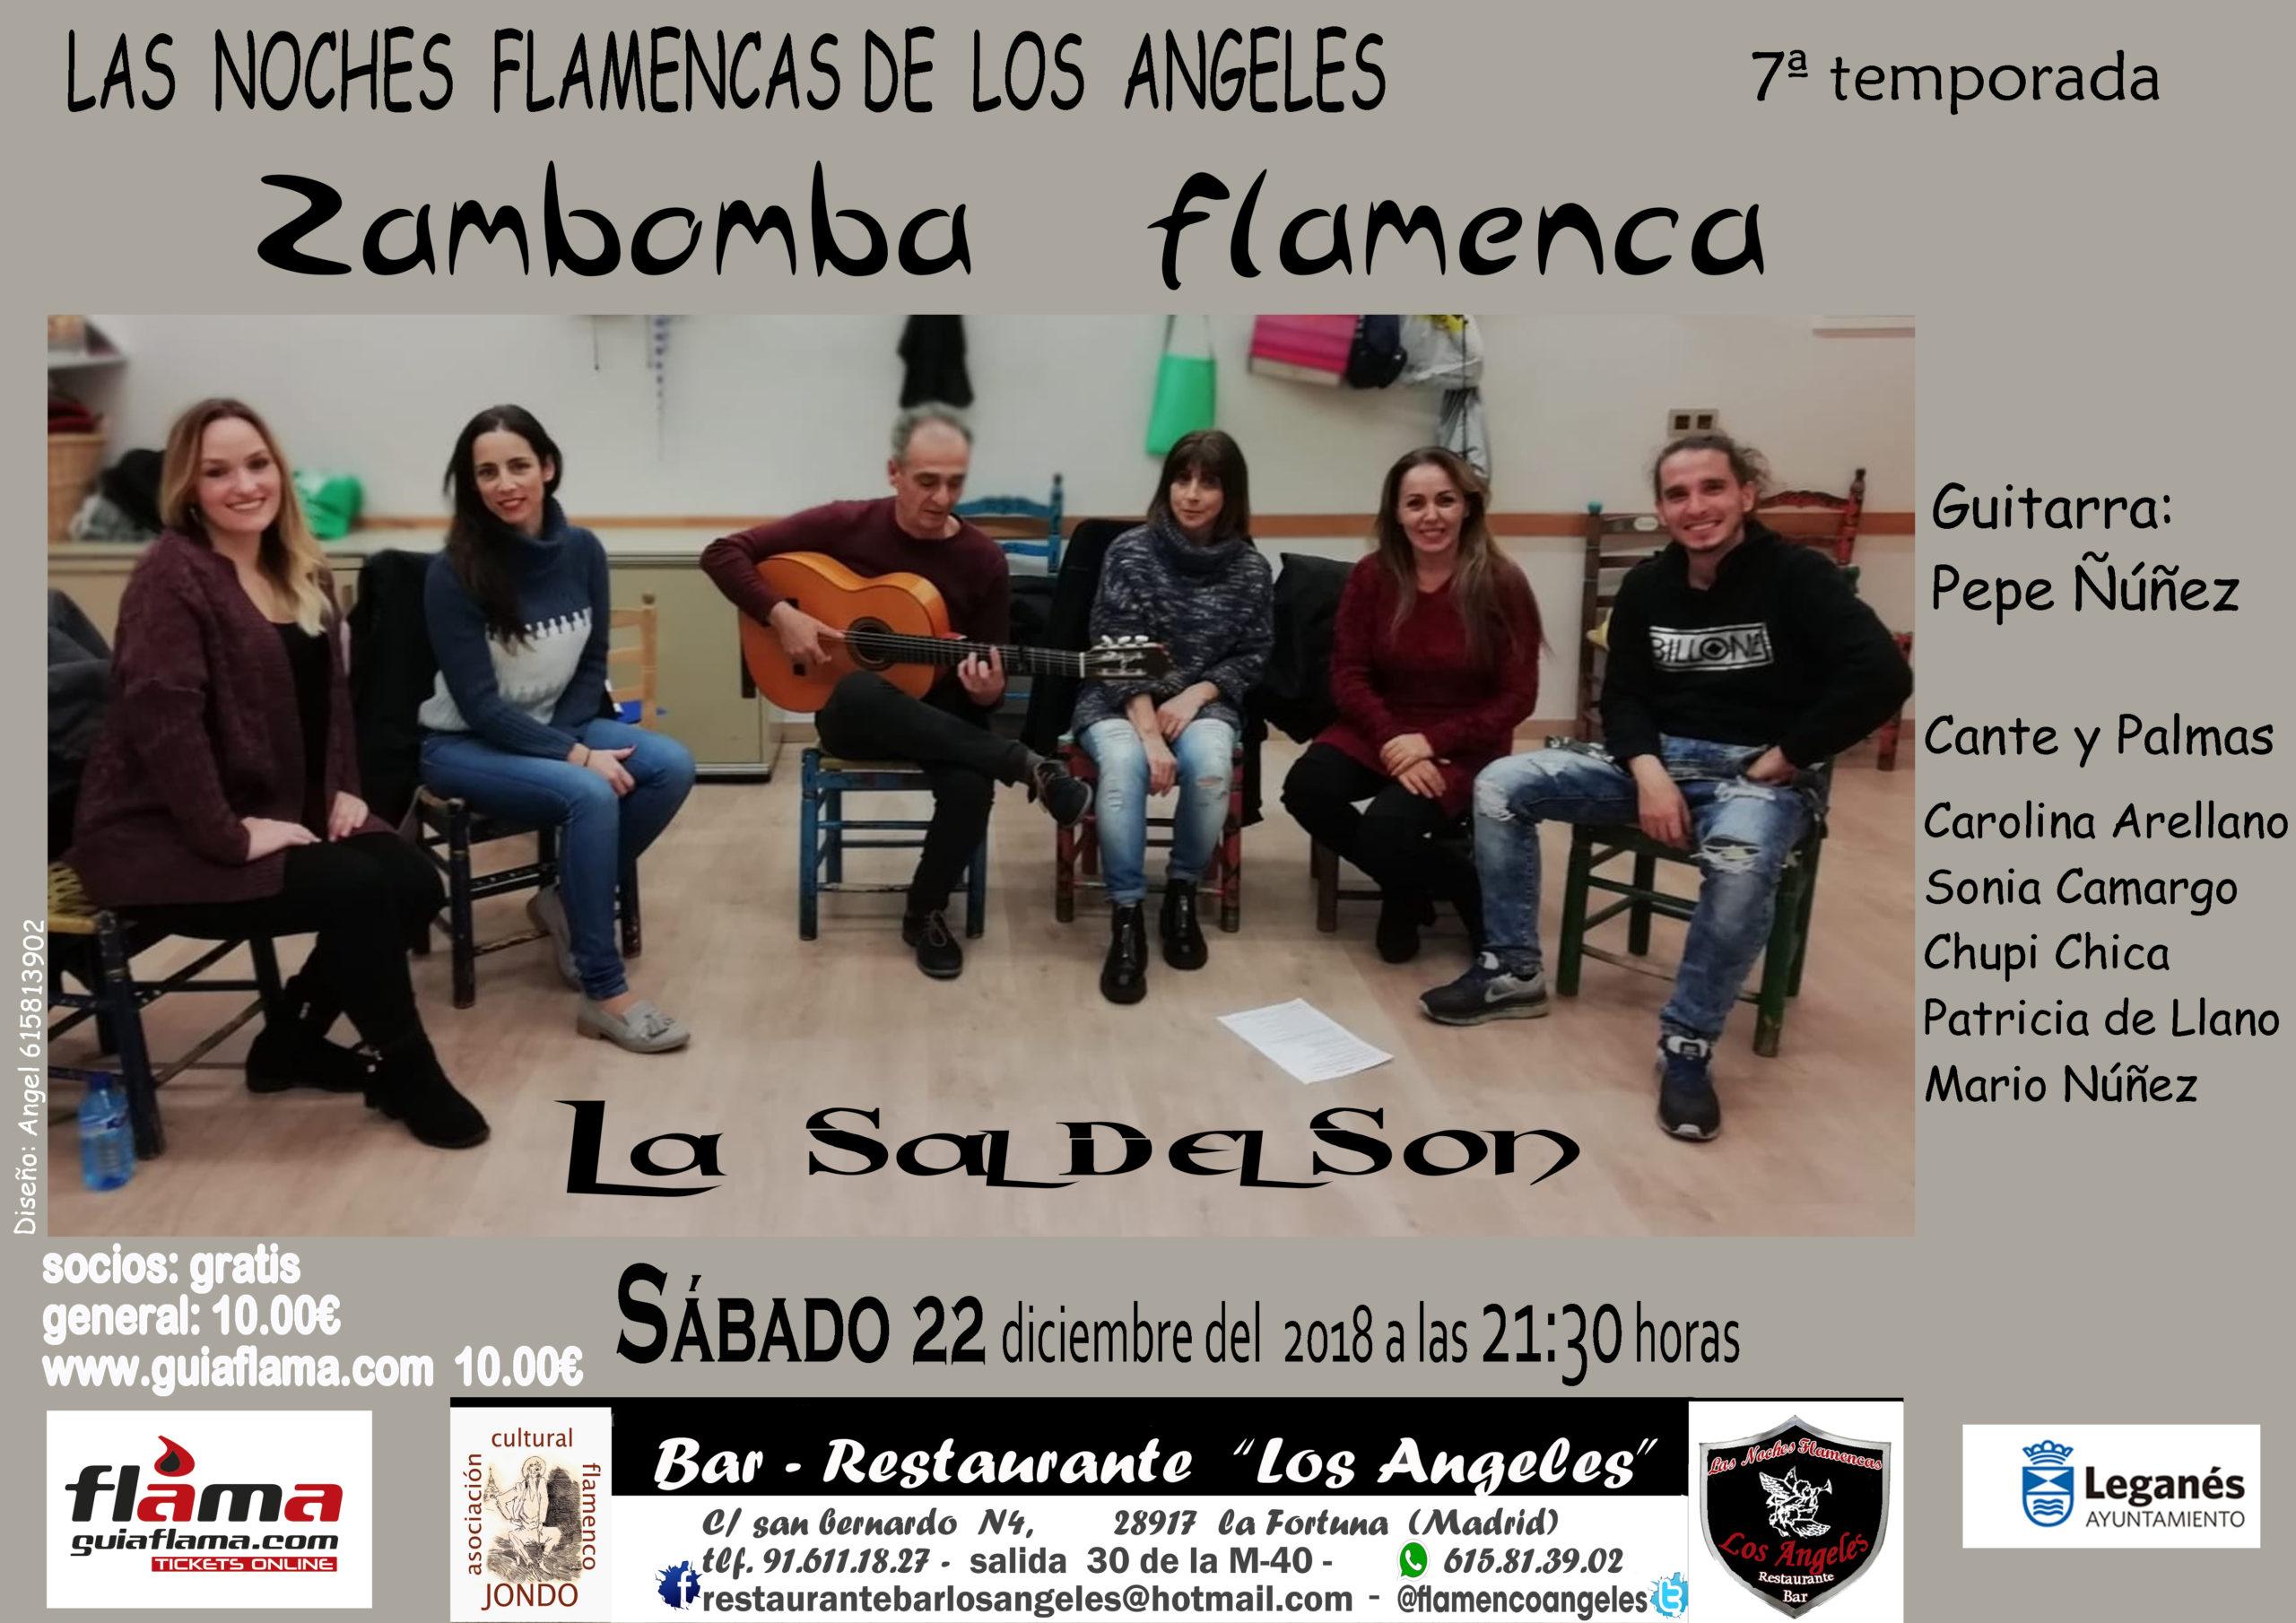 Zambomba flamenca en las noches flamencas de Los Angeles